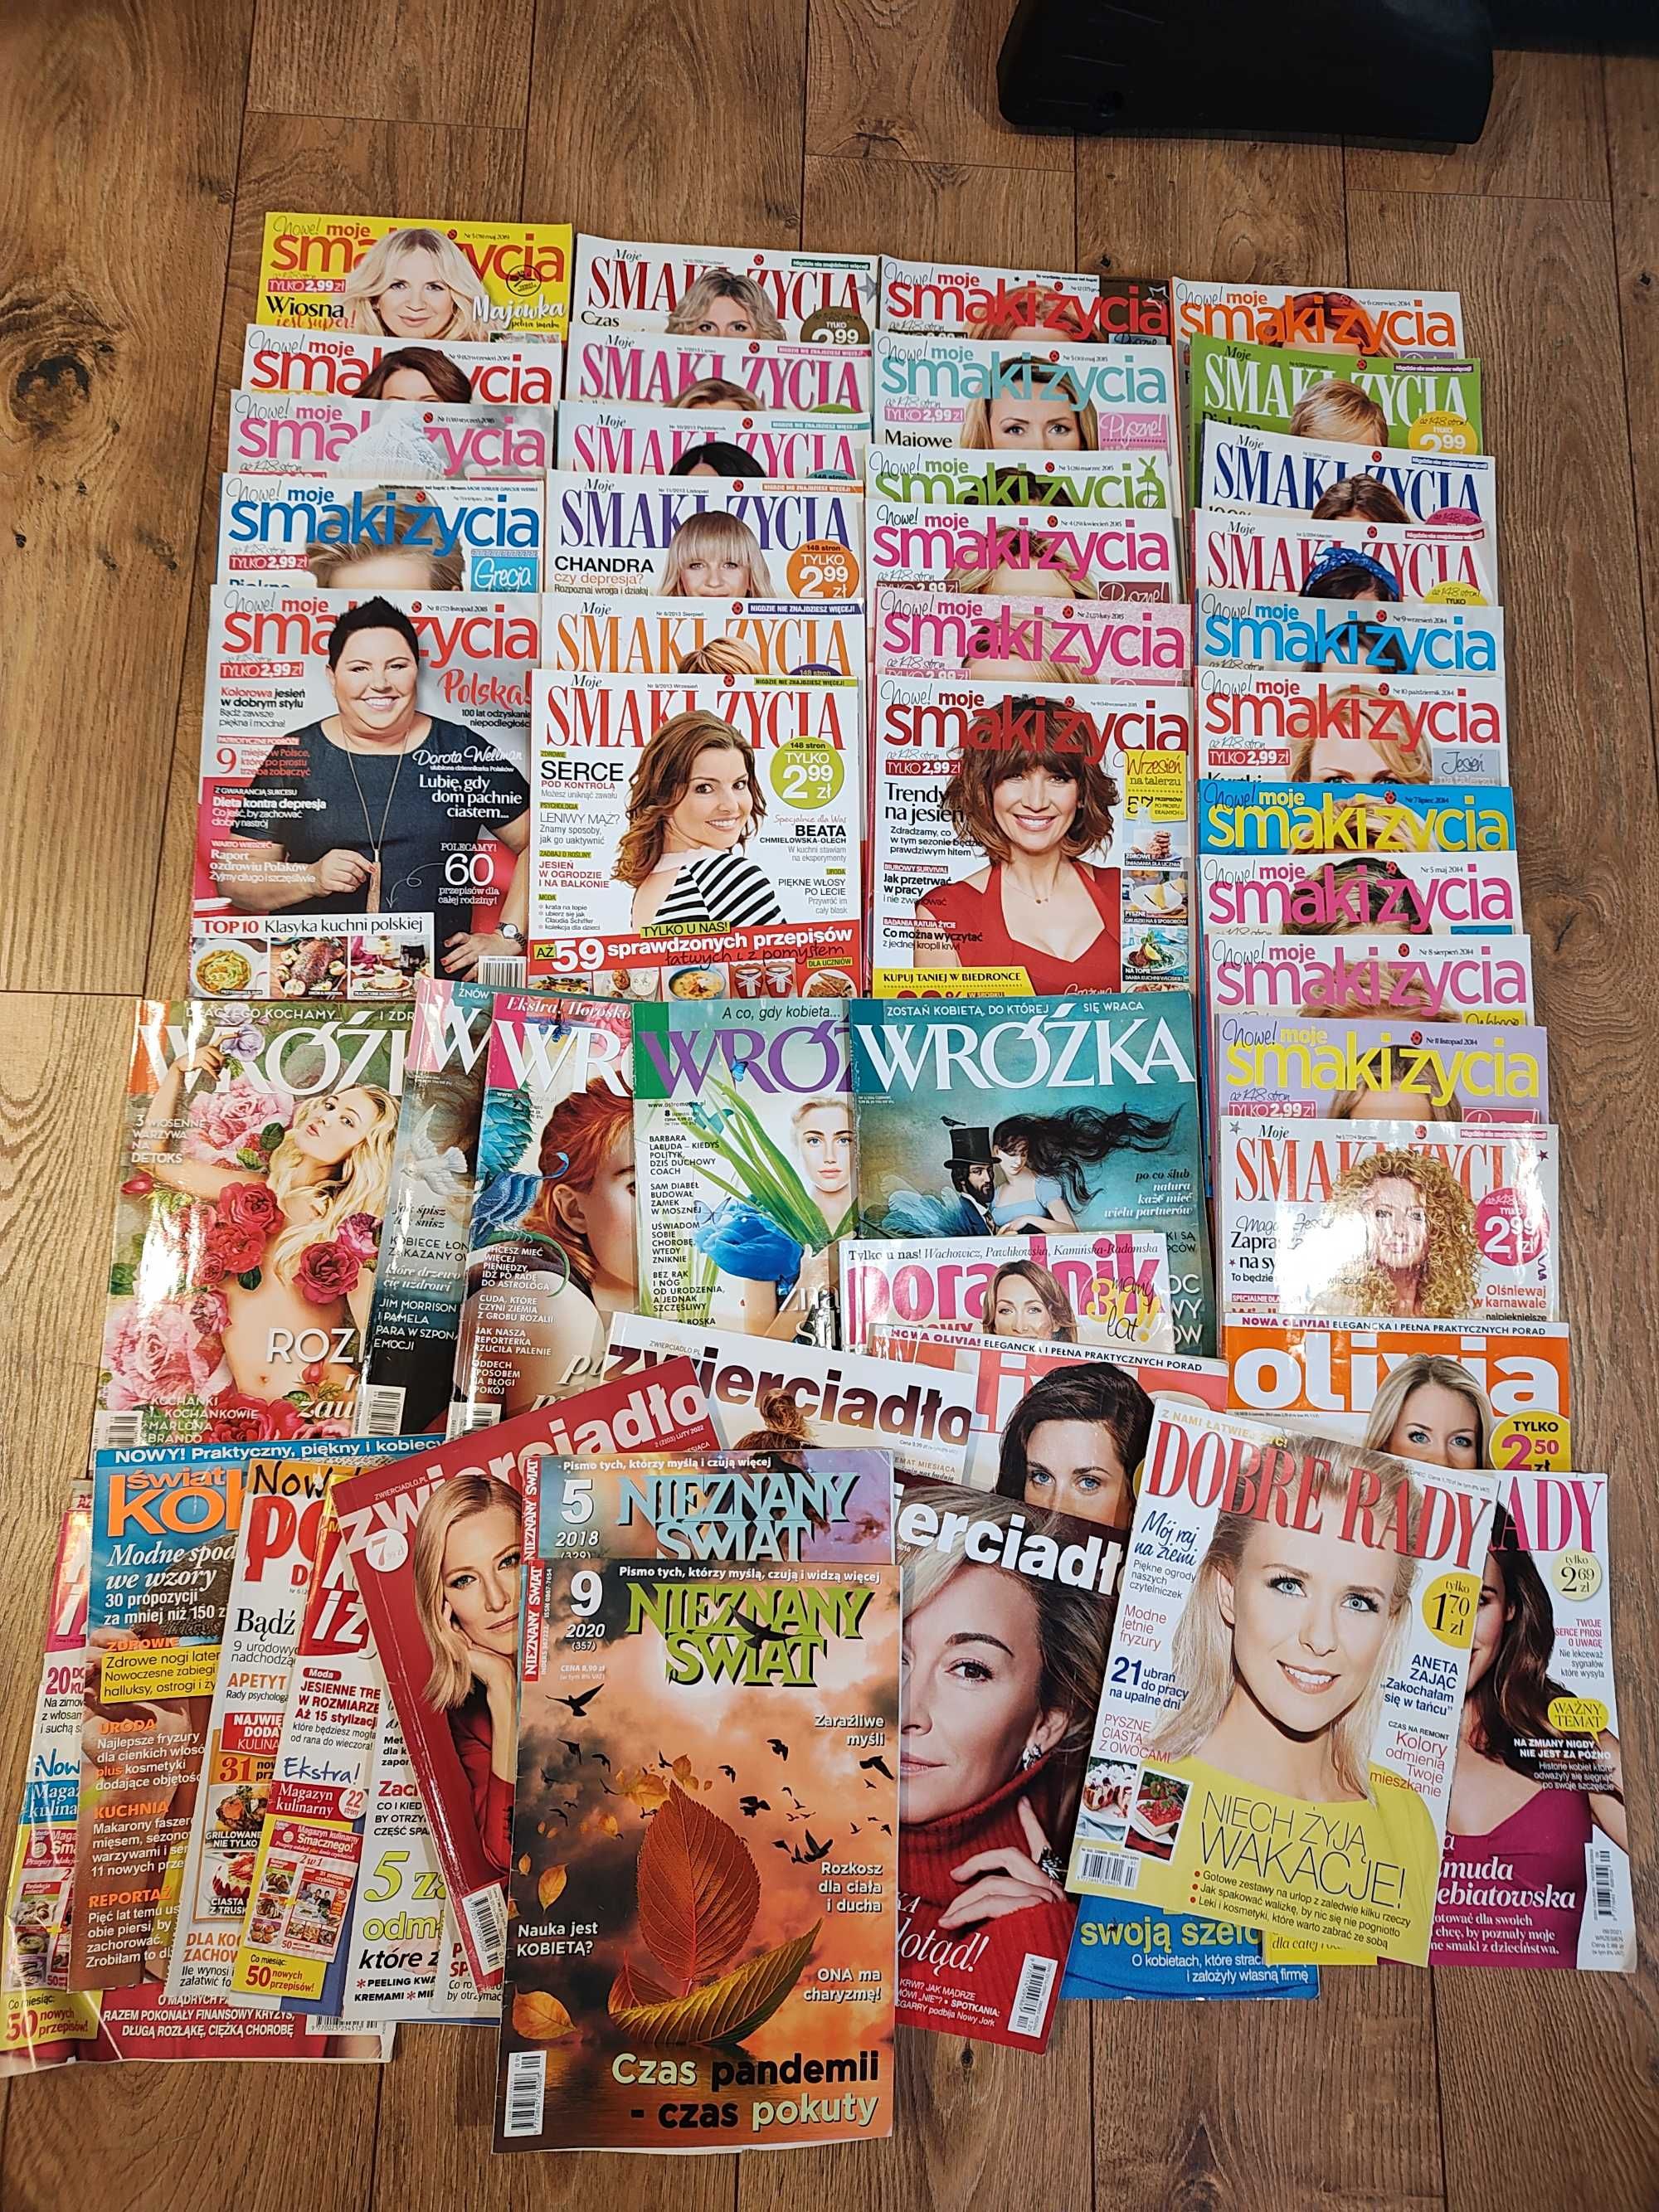 28 magazynów Moje smaki życia + Dobre rady, Wróżka, Świat kobiety inne